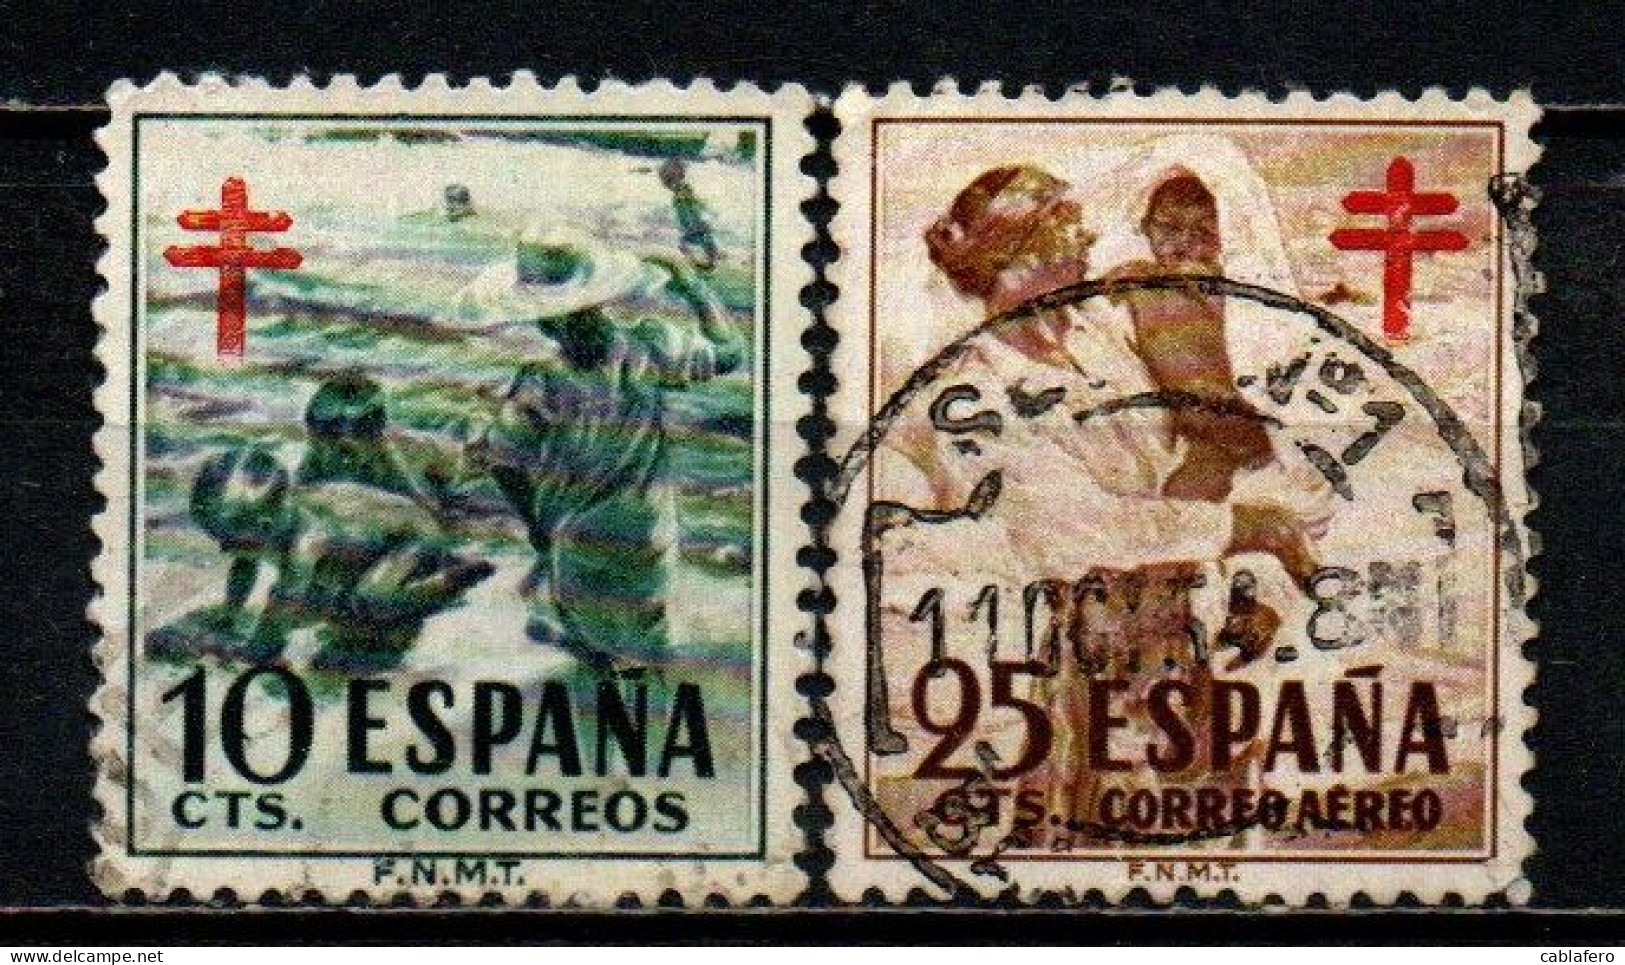 SPAGNA - 1951 - BAMBINI SULLA SPIAGGIA E MADRE CON FIGLIO - PRO TUBERCOLOTICI - CROCE DI LORENA IN ROSSO - USATI - Gebruikt